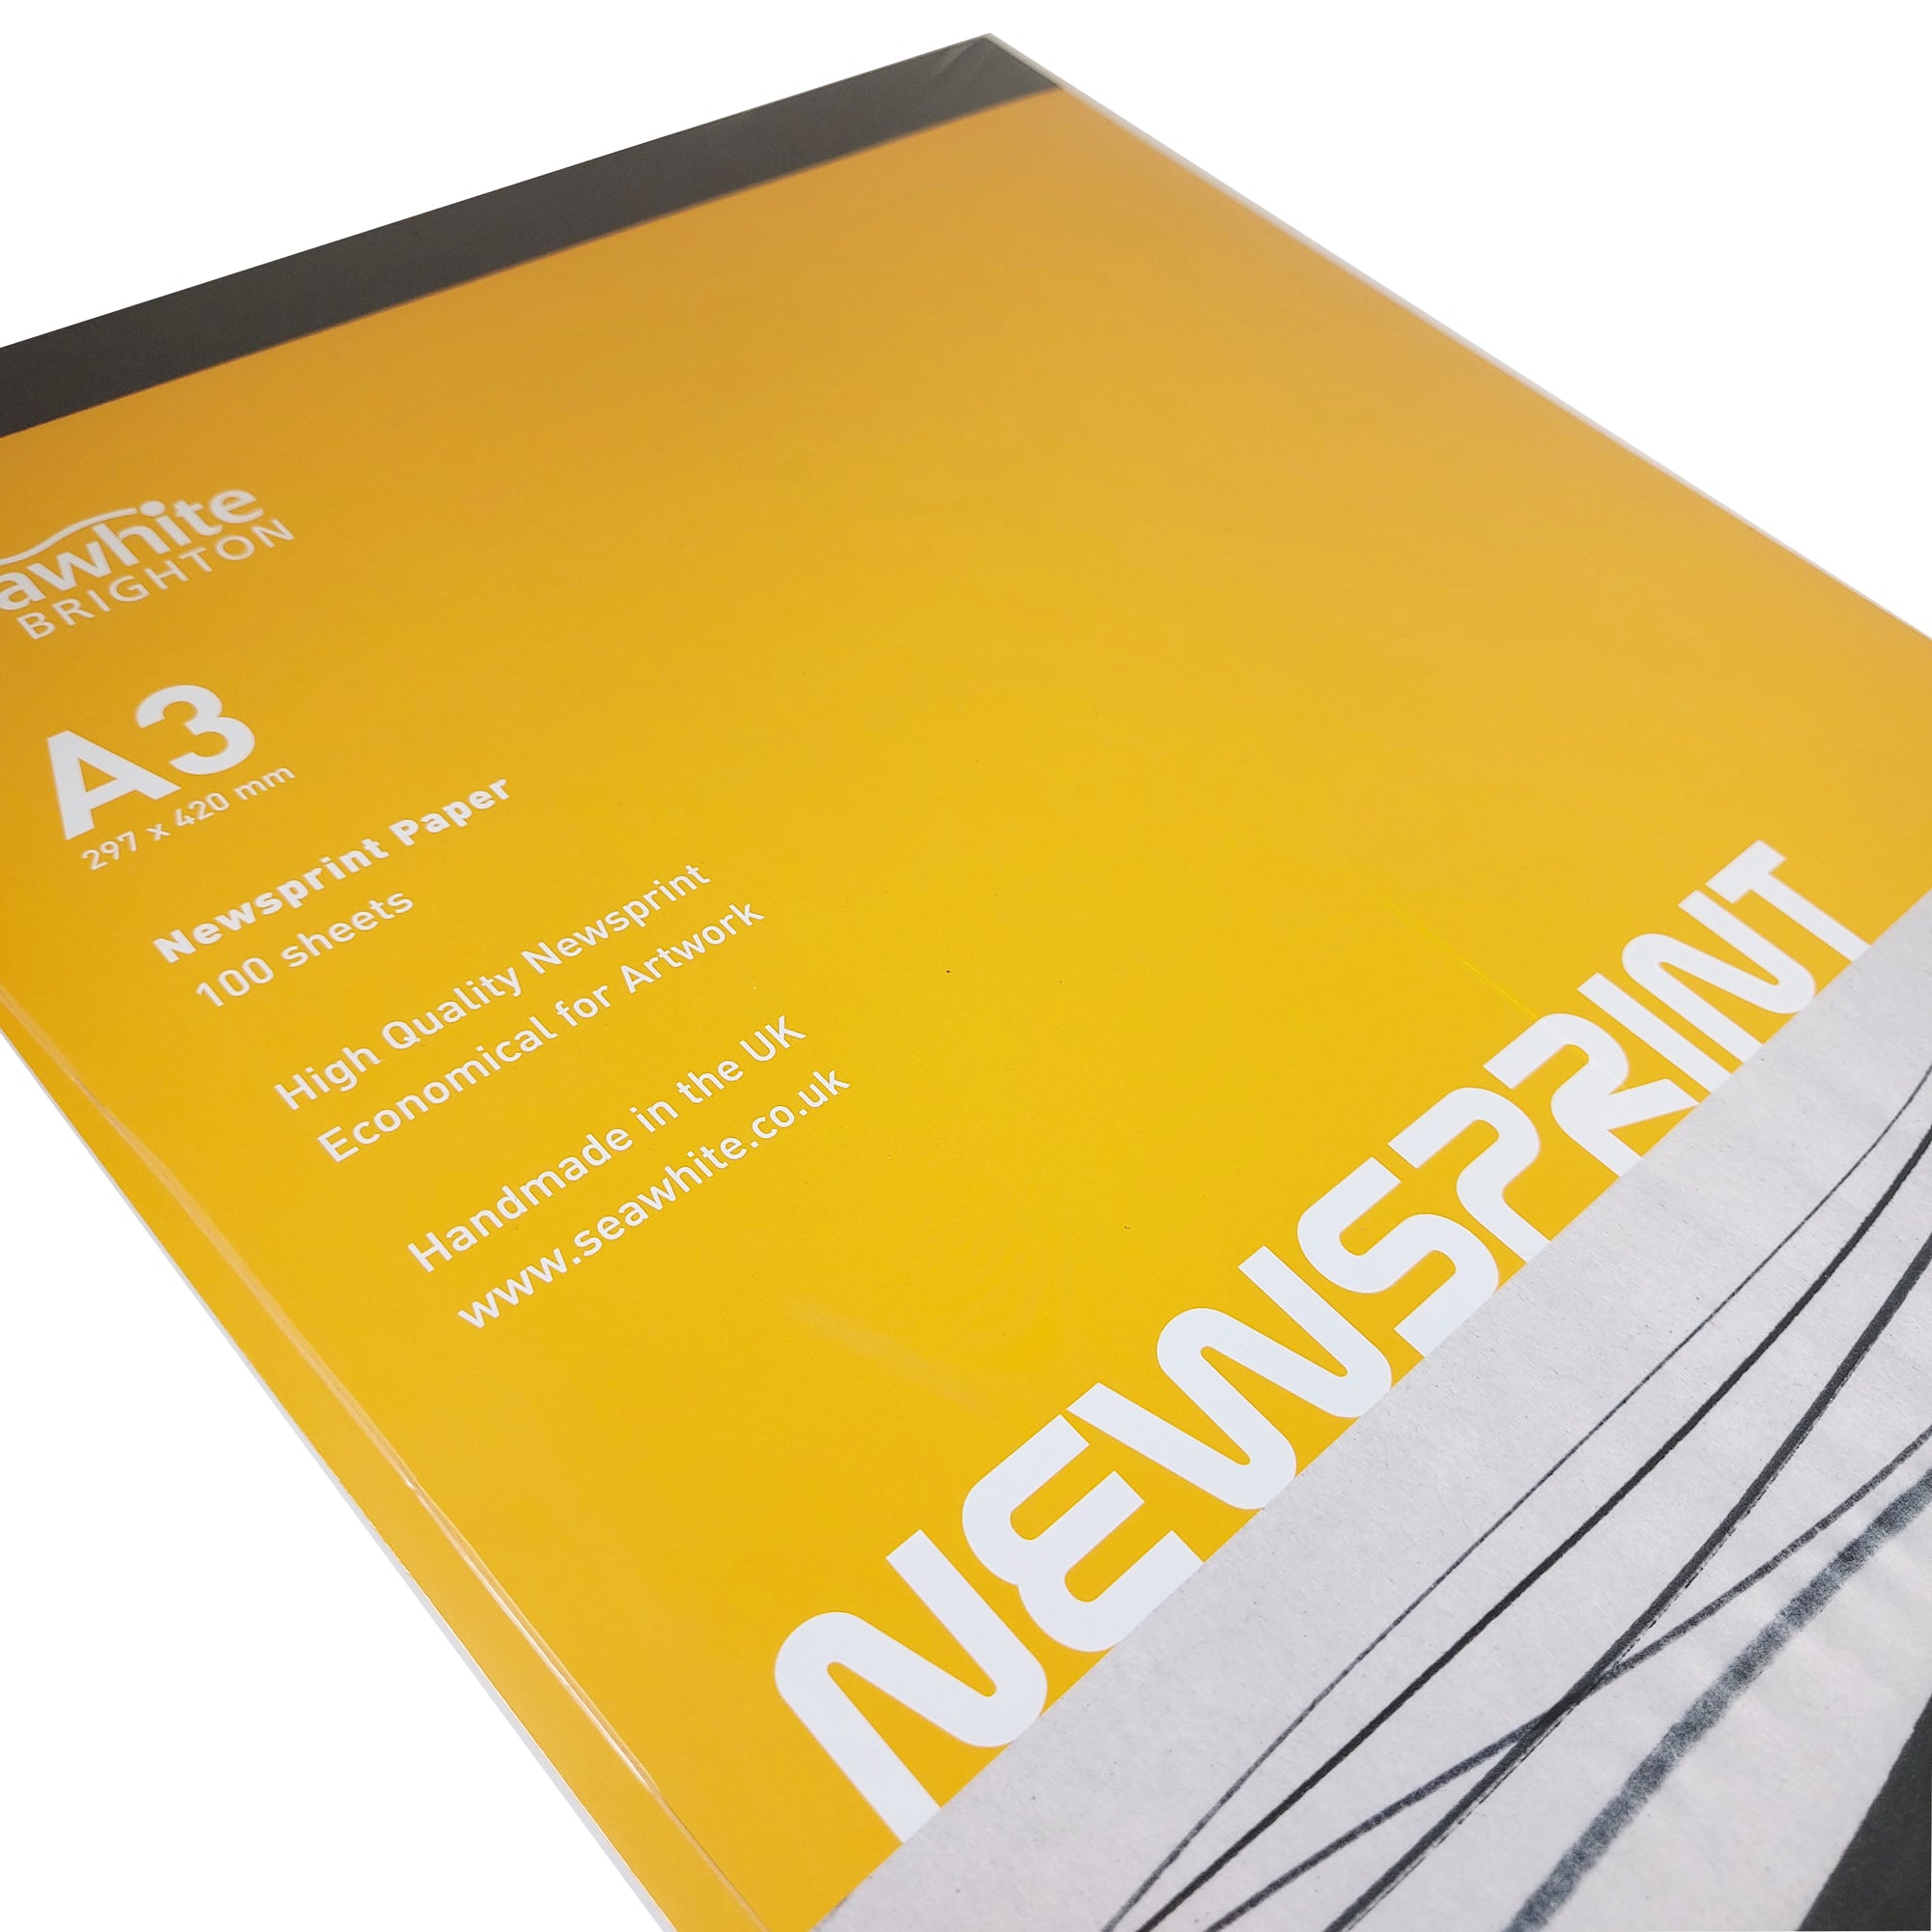 Newsprint Paper Pads